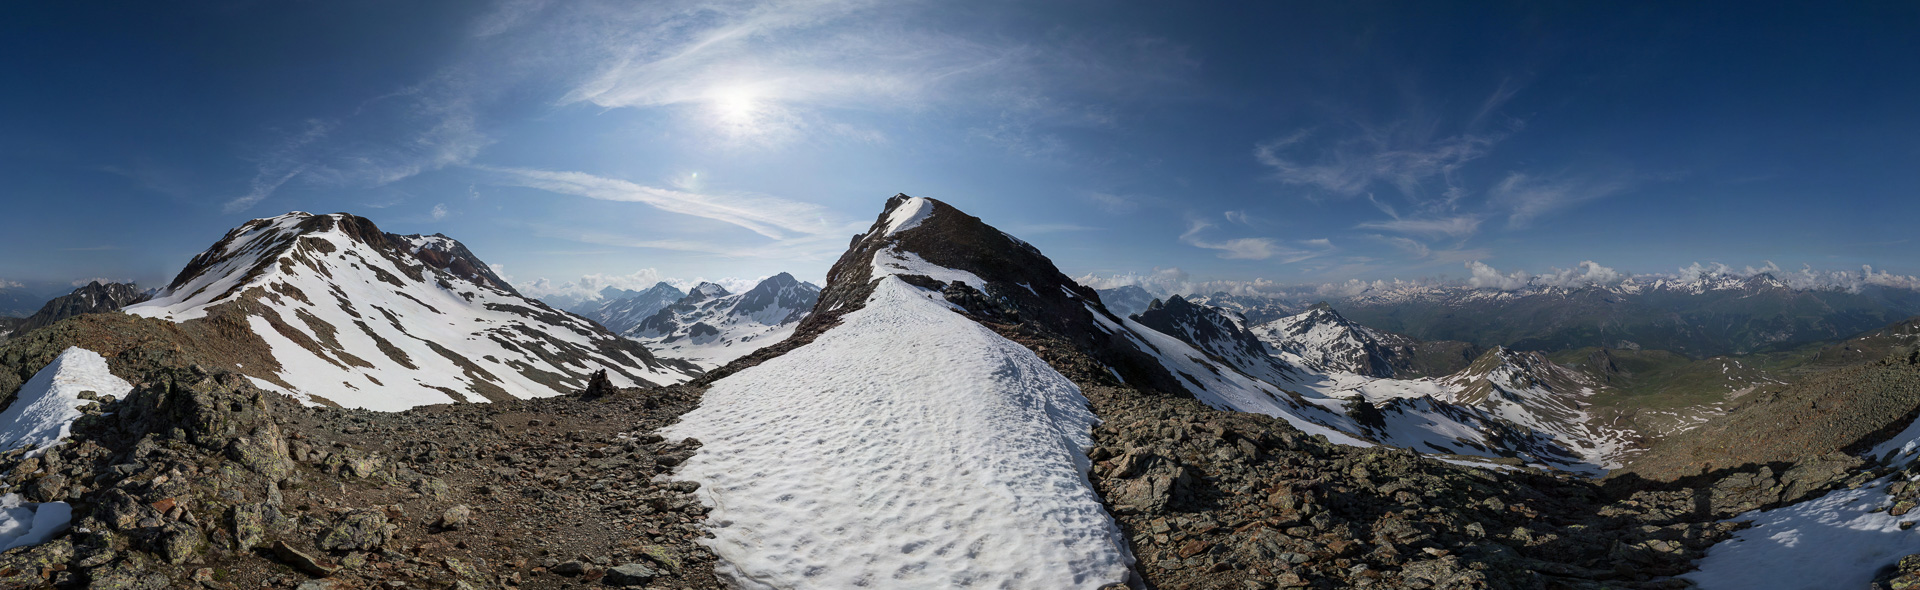 Links Tschima da Flix (3.316 m) mit Piz Calderas (3.397 m) und in der Mitte Piz d'Agnel (3.205 m).